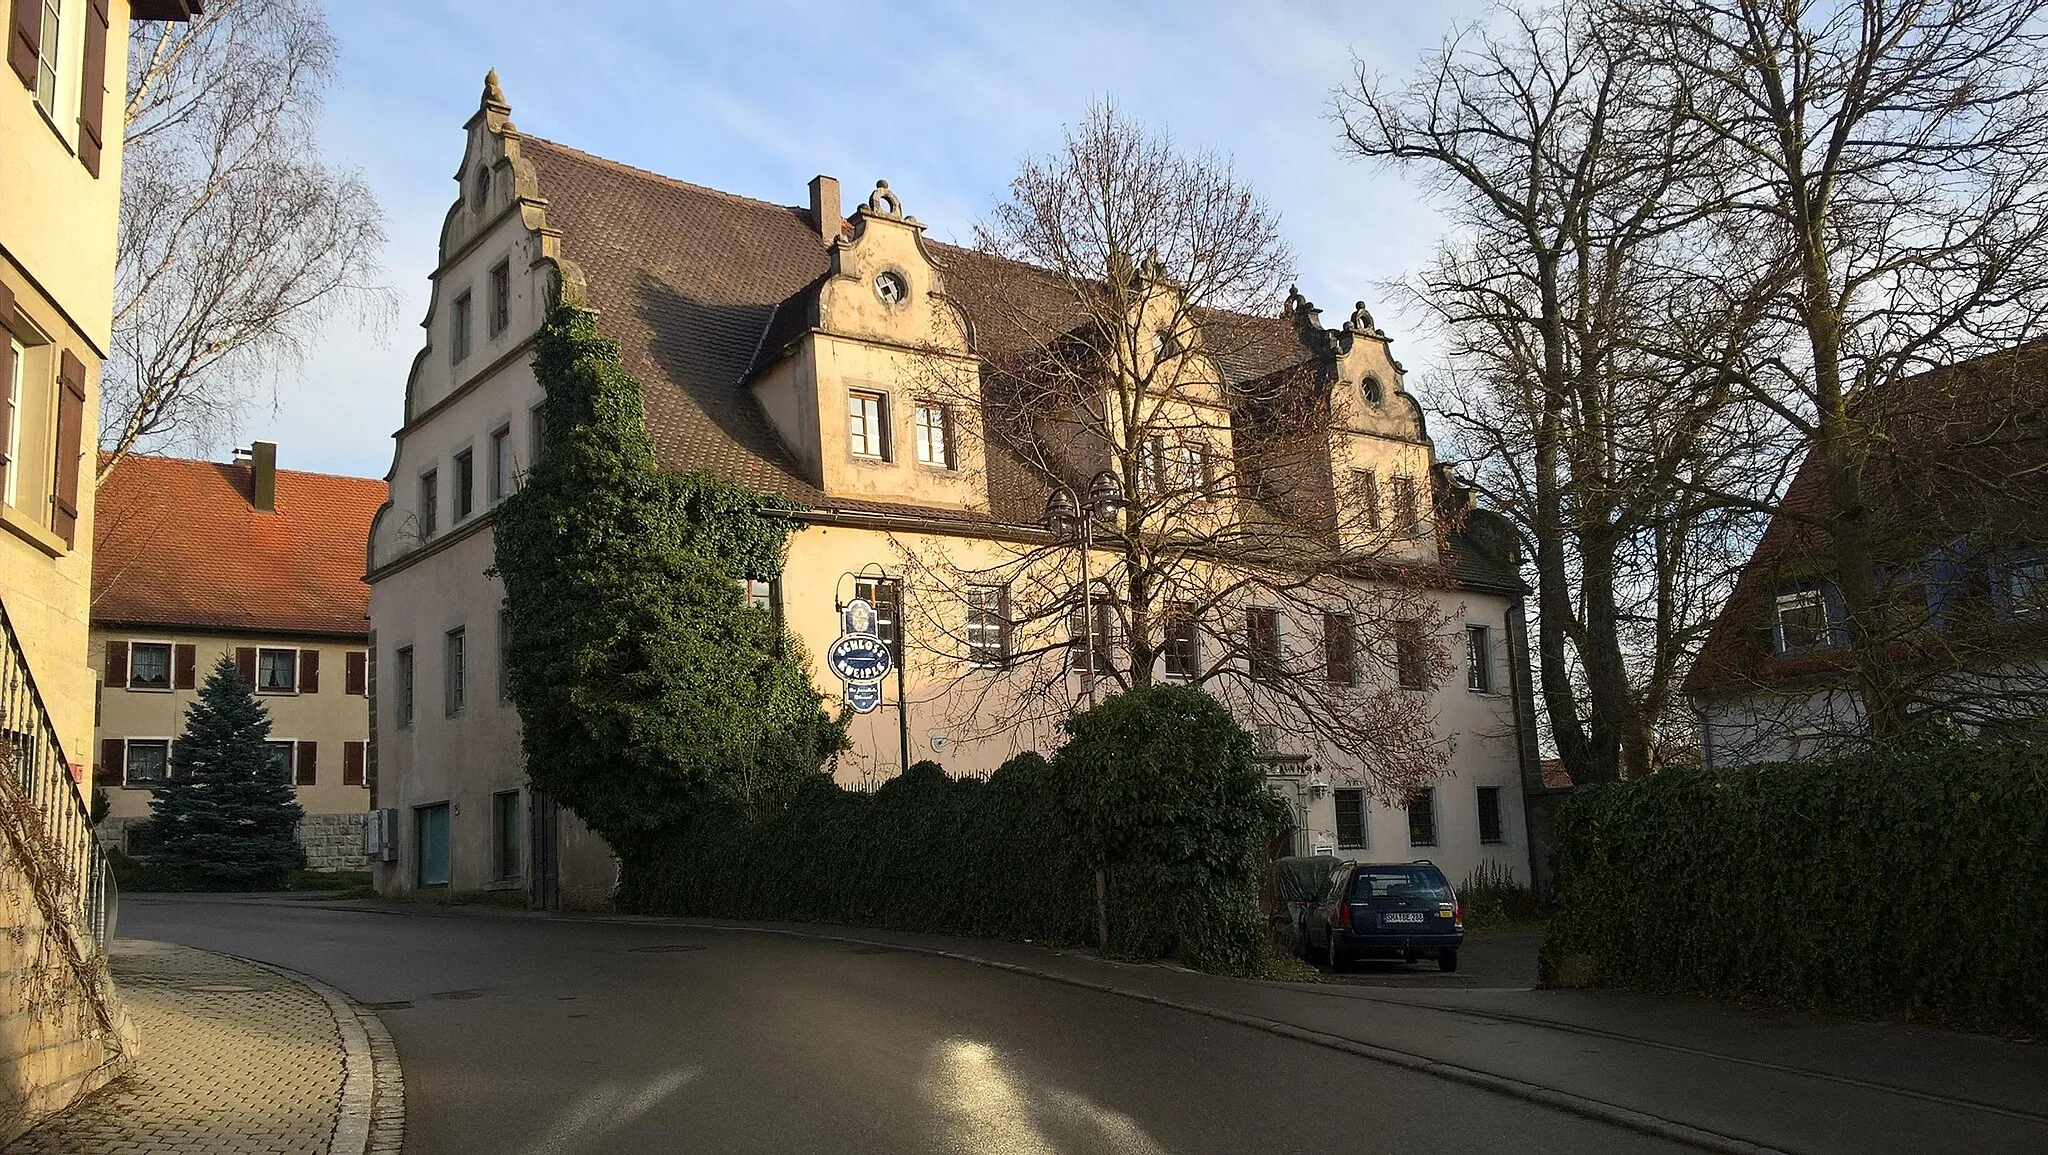 Photo showing: Blick nach Osten auf das Schloss Gröningen, ein Renaissancebau aus dem 17. Jahrhundert an der Helmshofer Straße im Dorf Gröningen der Gemeinde Satteldorf. Links die Treppe des einstigen Rathauses.